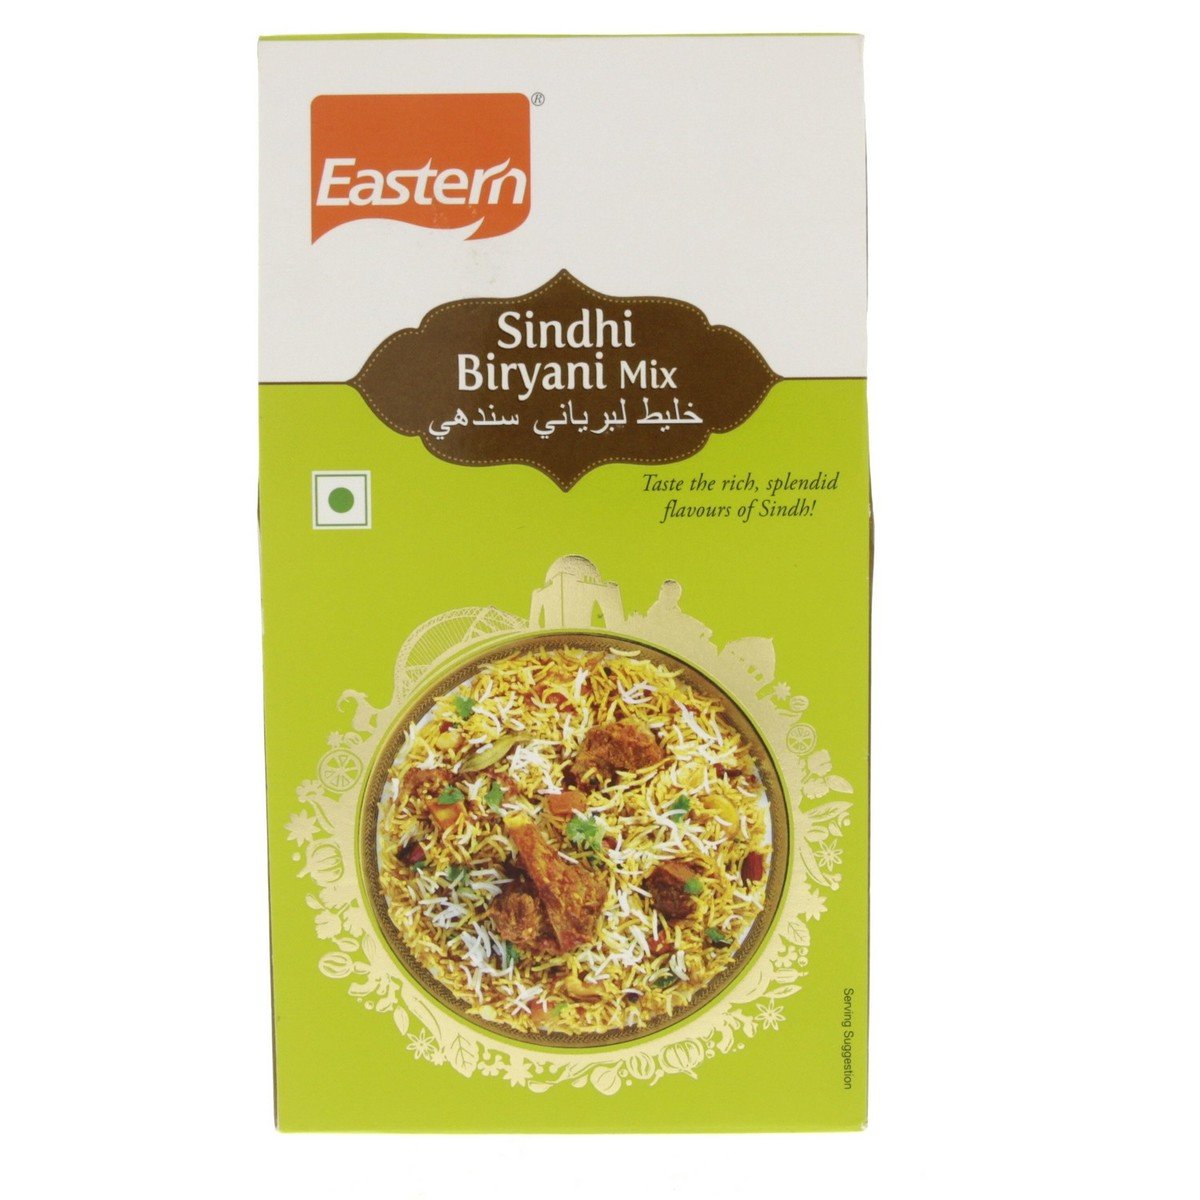 Eastern Sindhi Biryani Mix, 60 g